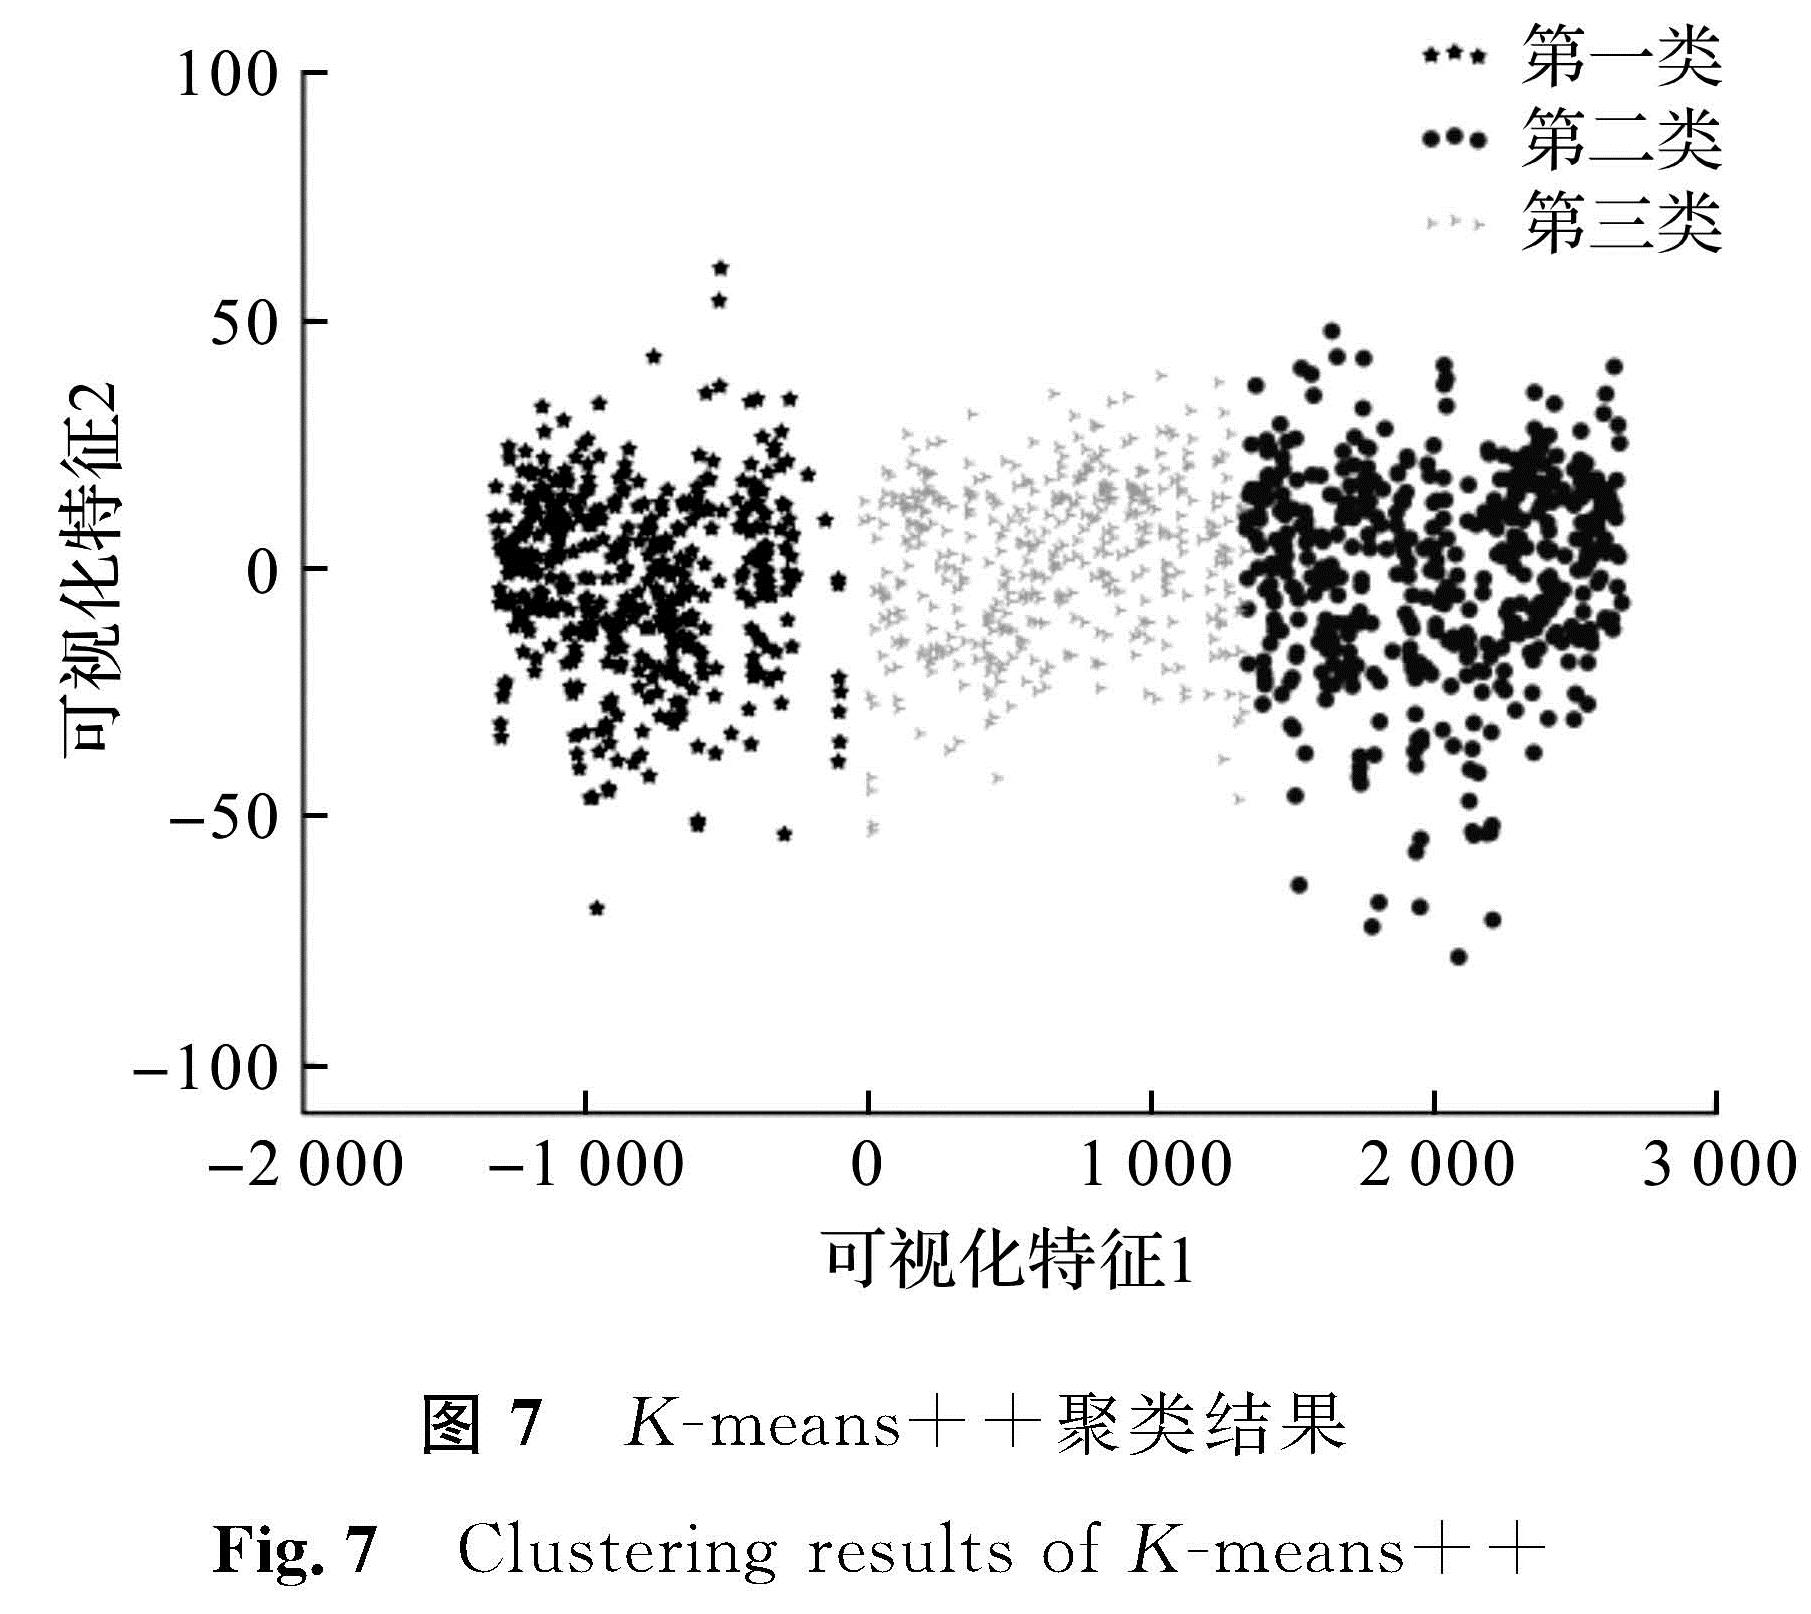 图7 K-means++聚类结果<br/>Fig.7 Clustering results of K-means++